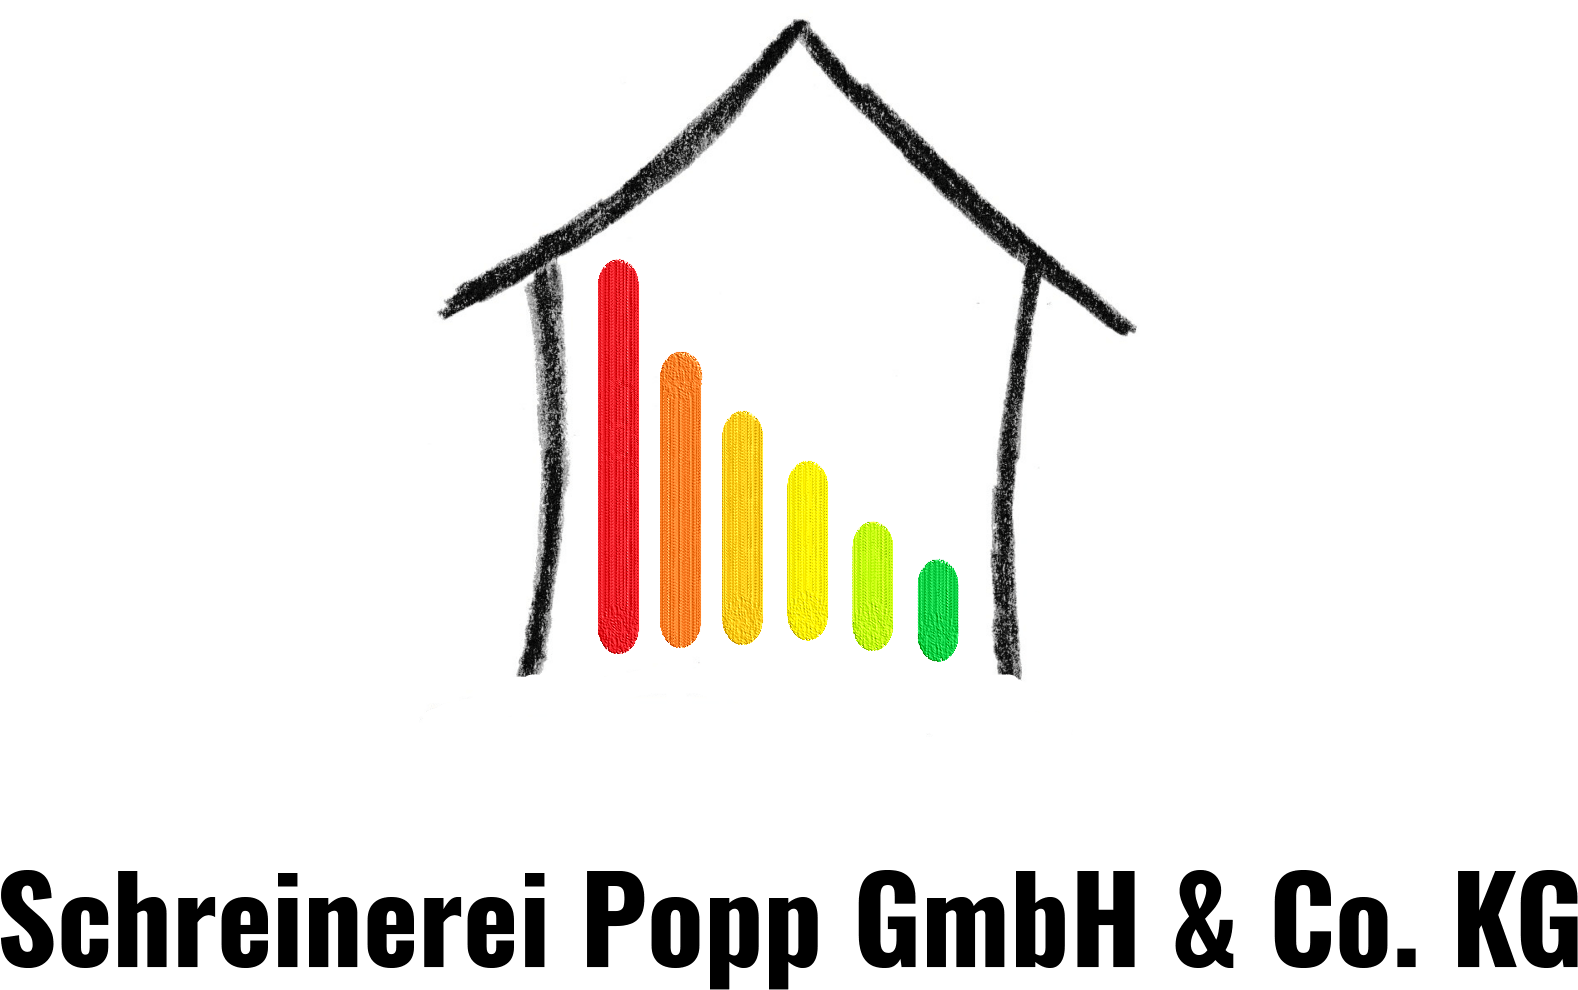 Schreinerei Popp GmbH & Co. KG